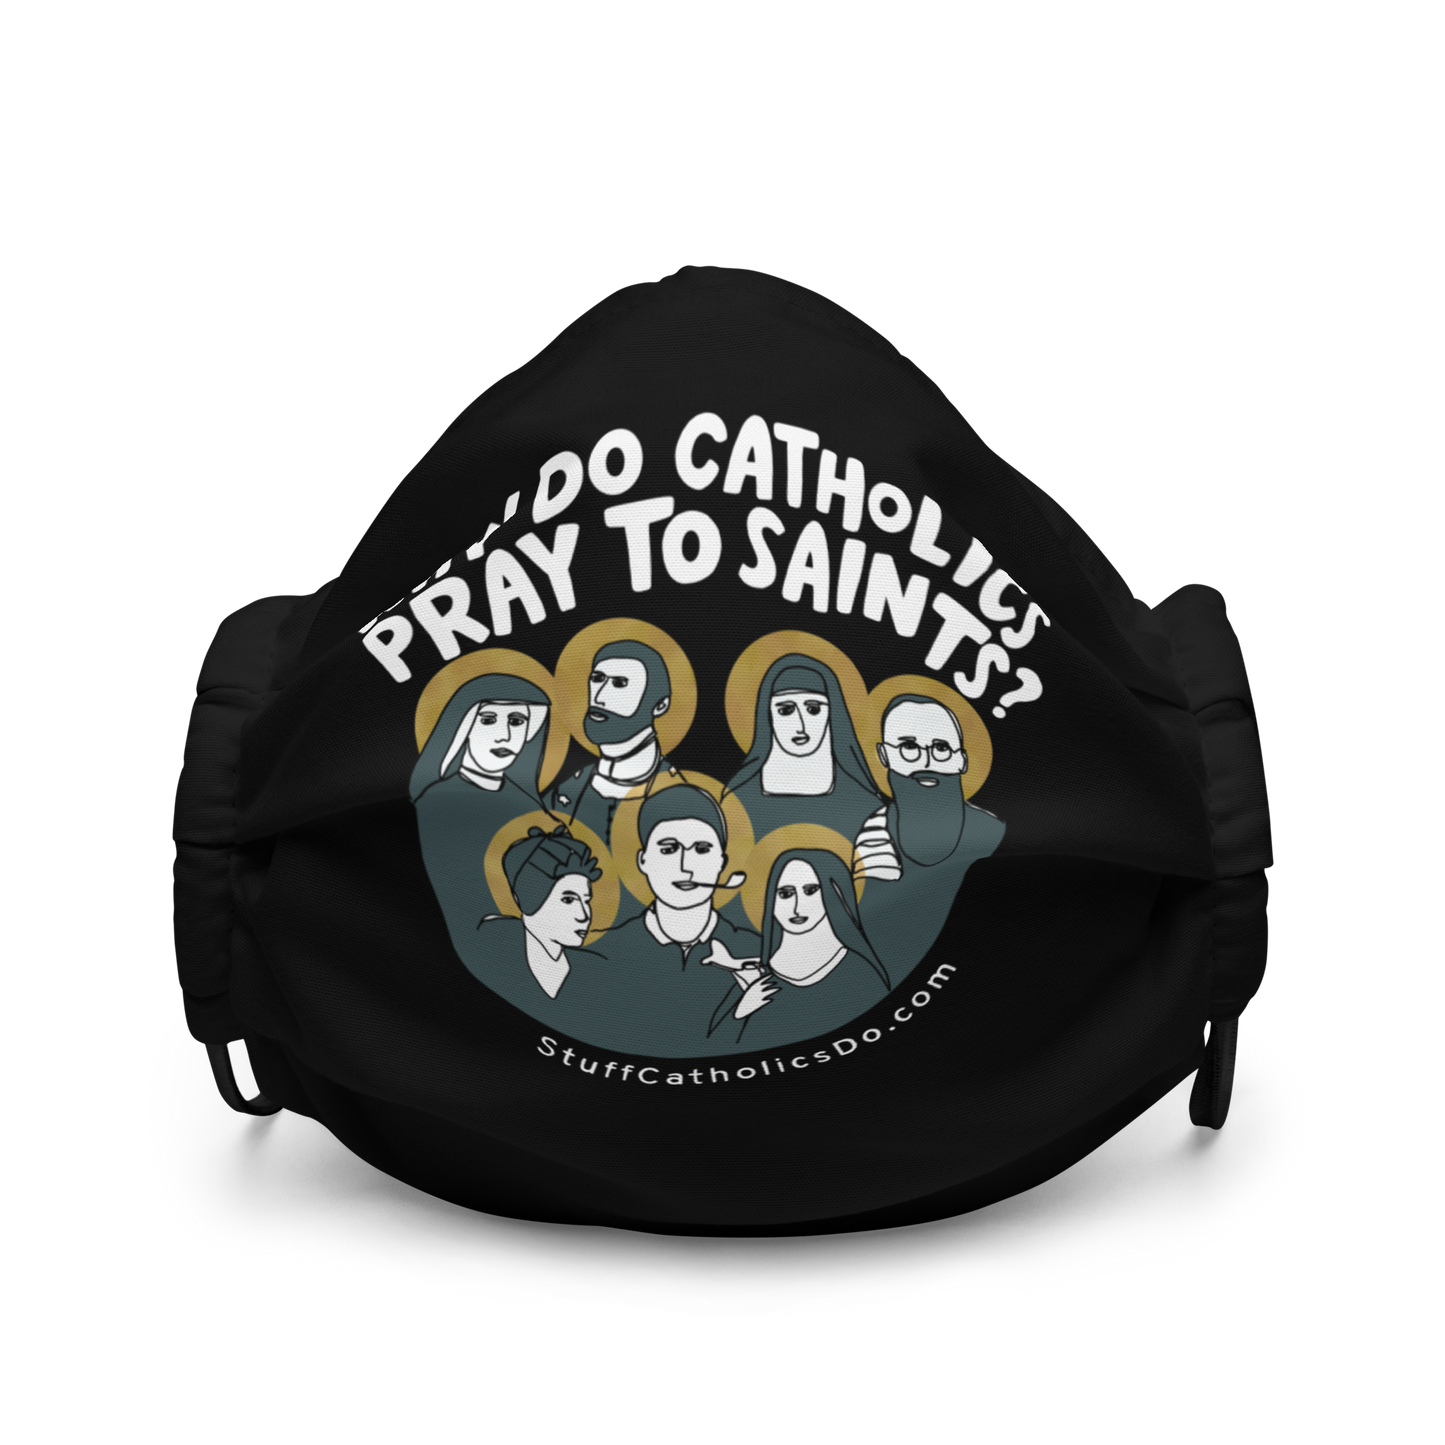 "Why Do Catholics Pray To Saints?" Face Mask